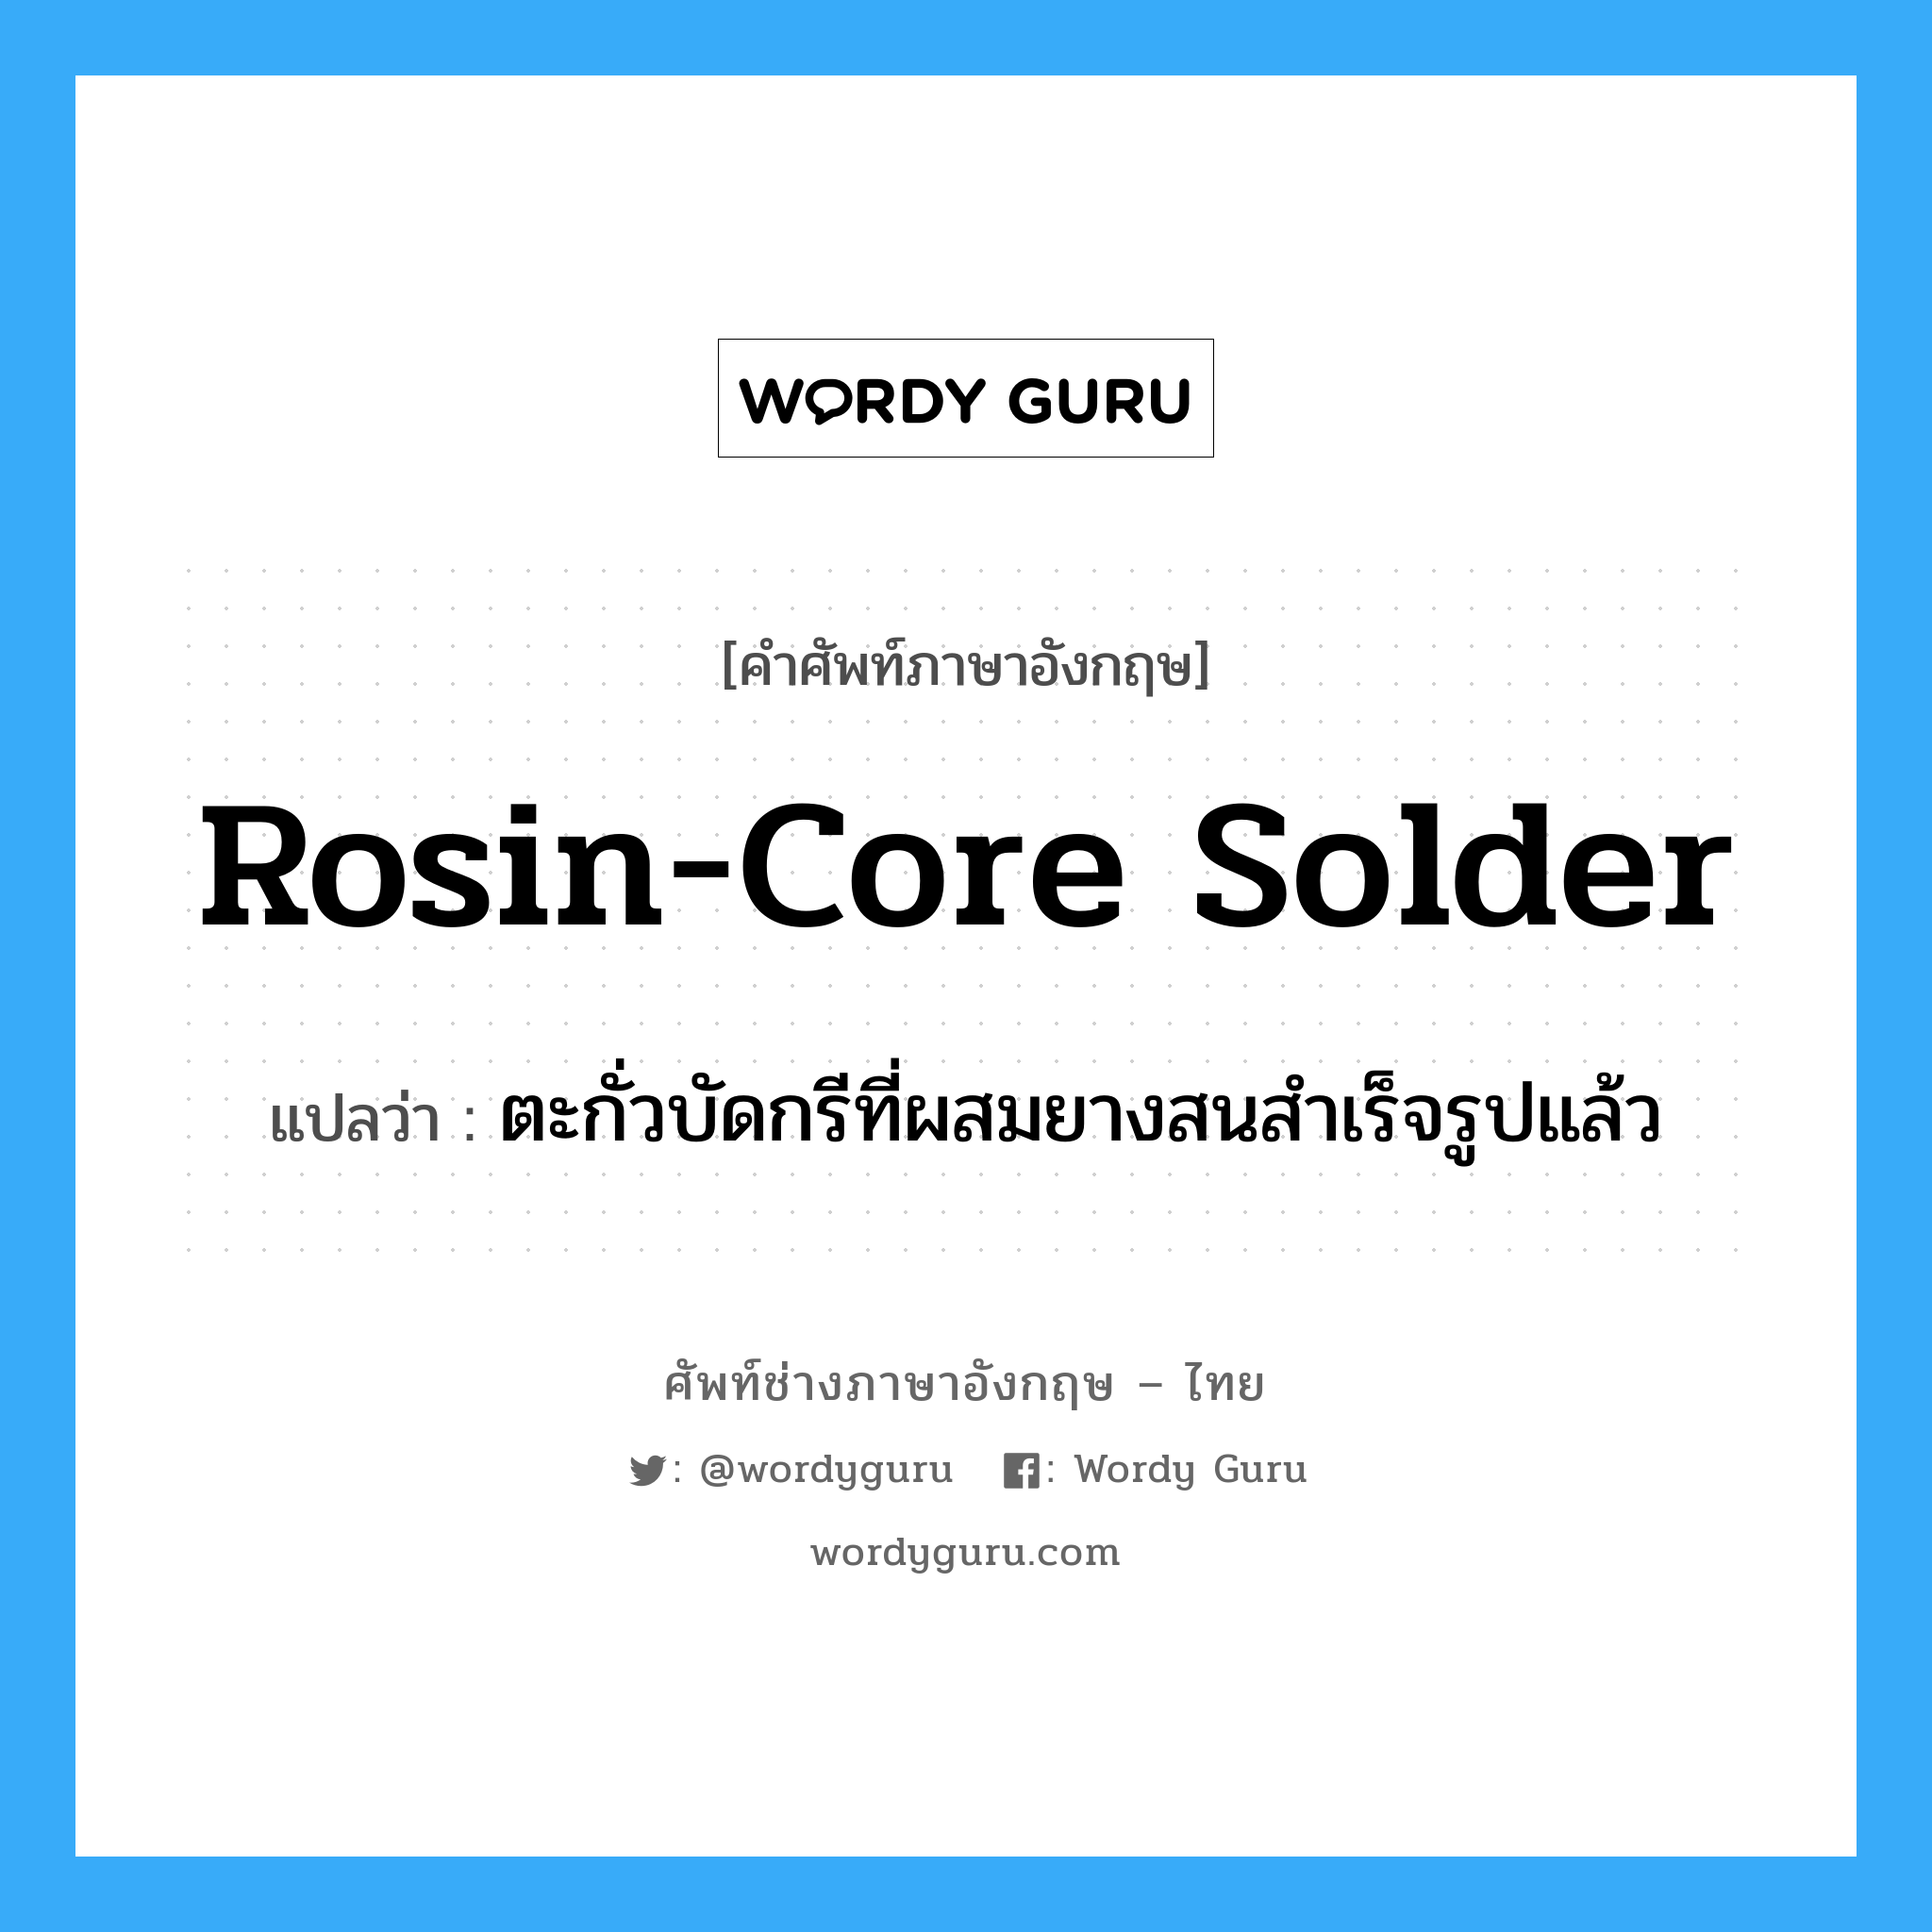 rosin-core solder แปลว่า?, คำศัพท์ช่างภาษาอังกฤษ - ไทย rosin-core solder คำศัพท์ภาษาอังกฤษ rosin-core solder แปลว่า ตะกั่วบัดกรีที่ผสมยางสนสำเร็จรูปแล้ว